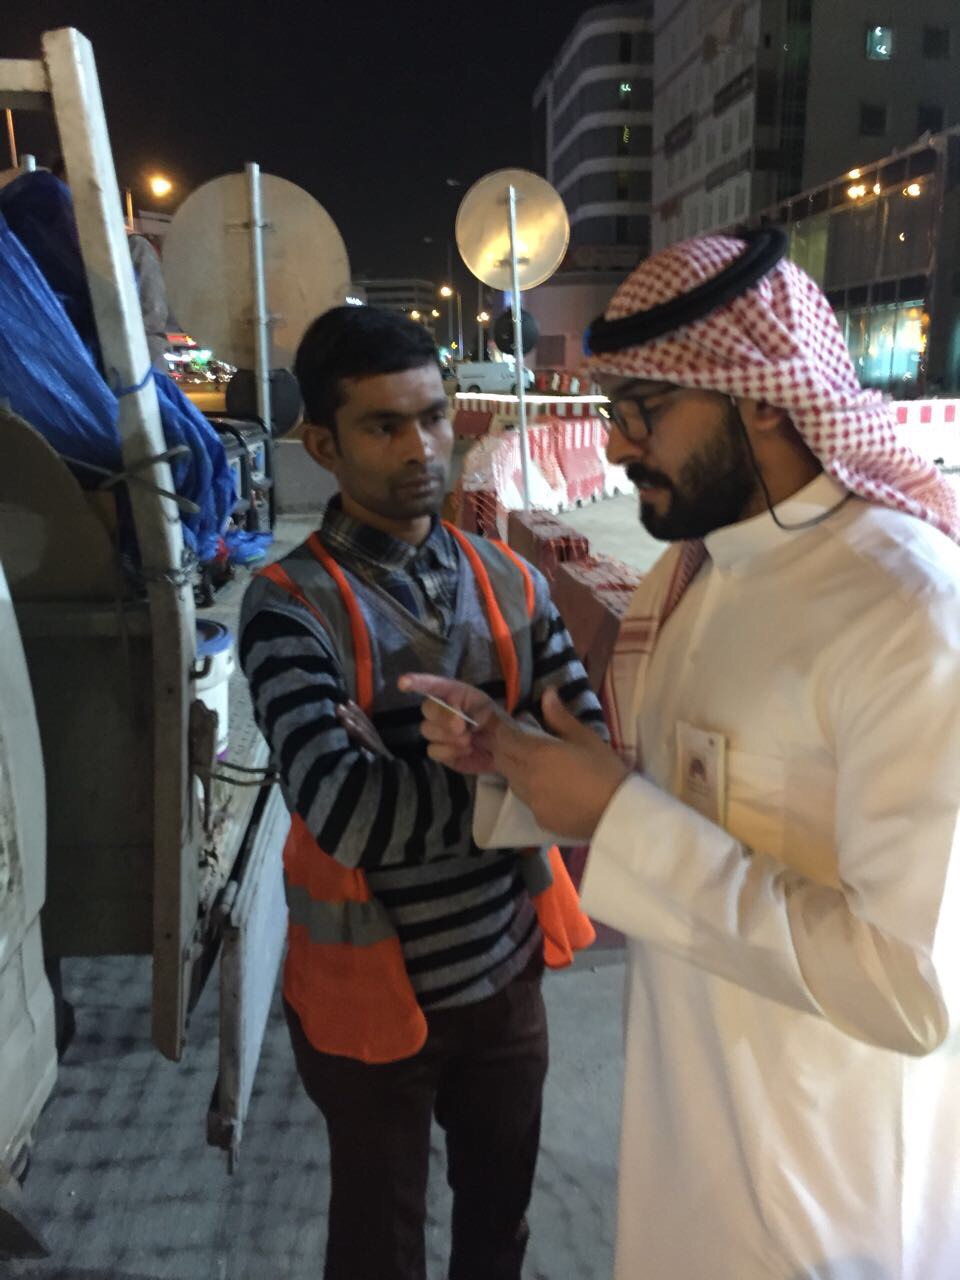 بعد مقطع النوم في العراء.. عمل الرياض يلزم شركة بمسكن مناسب للعمال